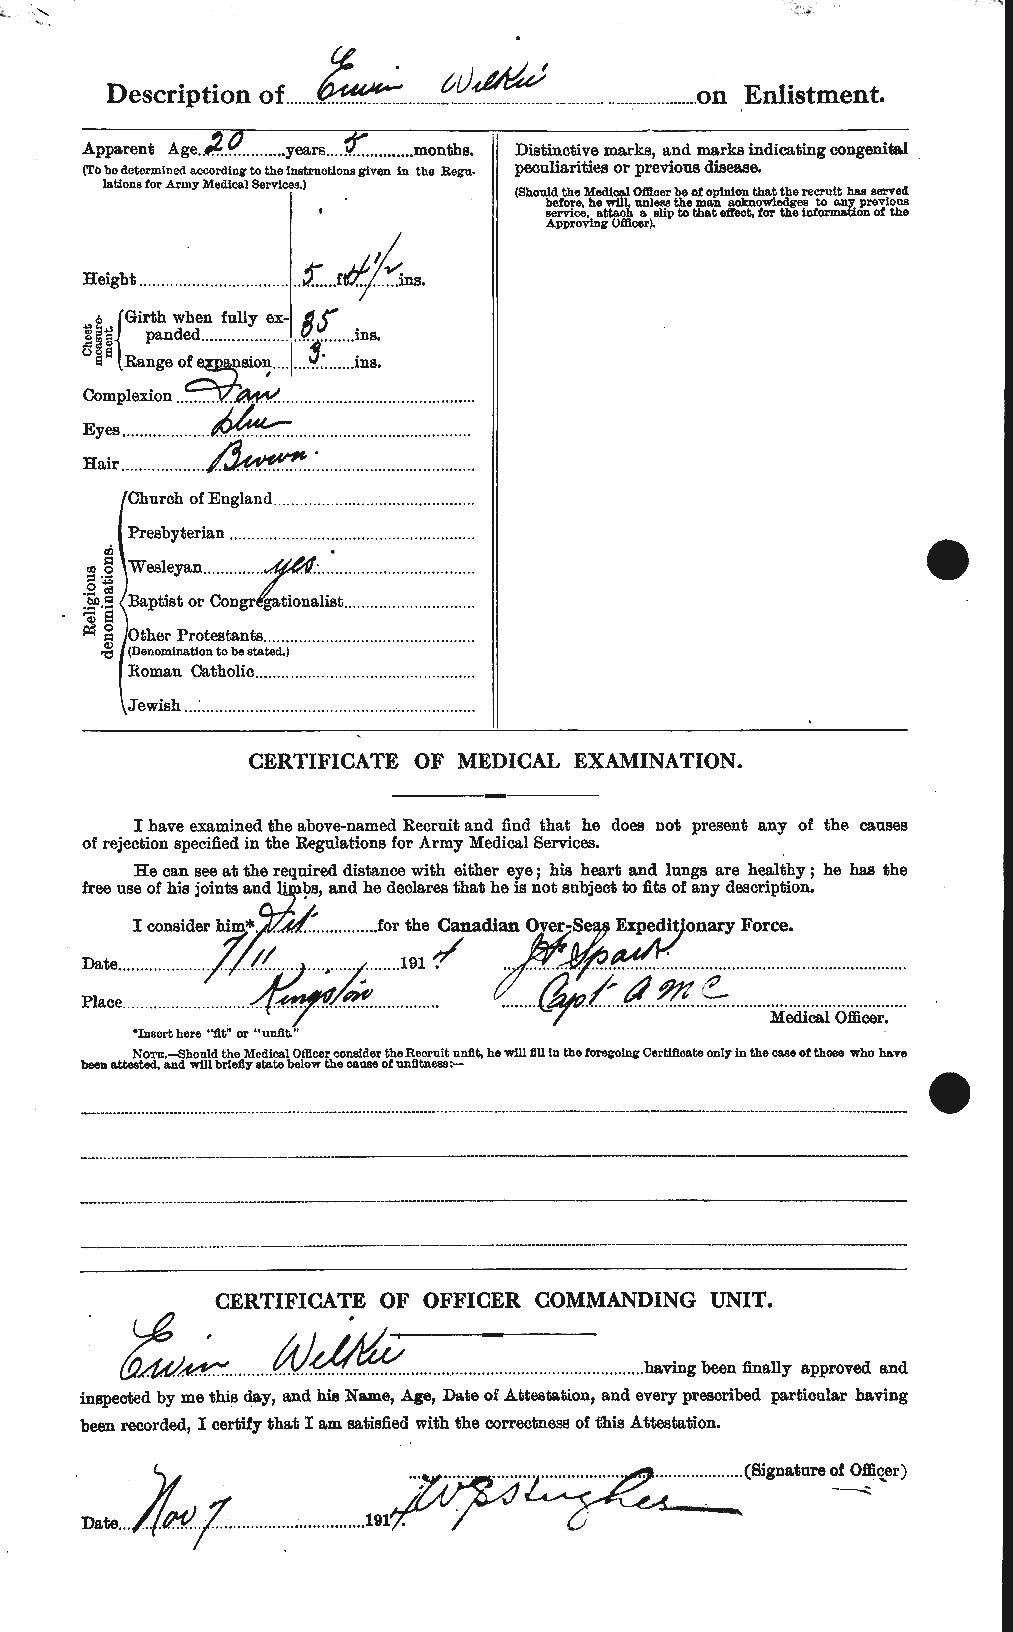 Dossiers du Personnel de la Première Guerre mondiale - CEC 680427b